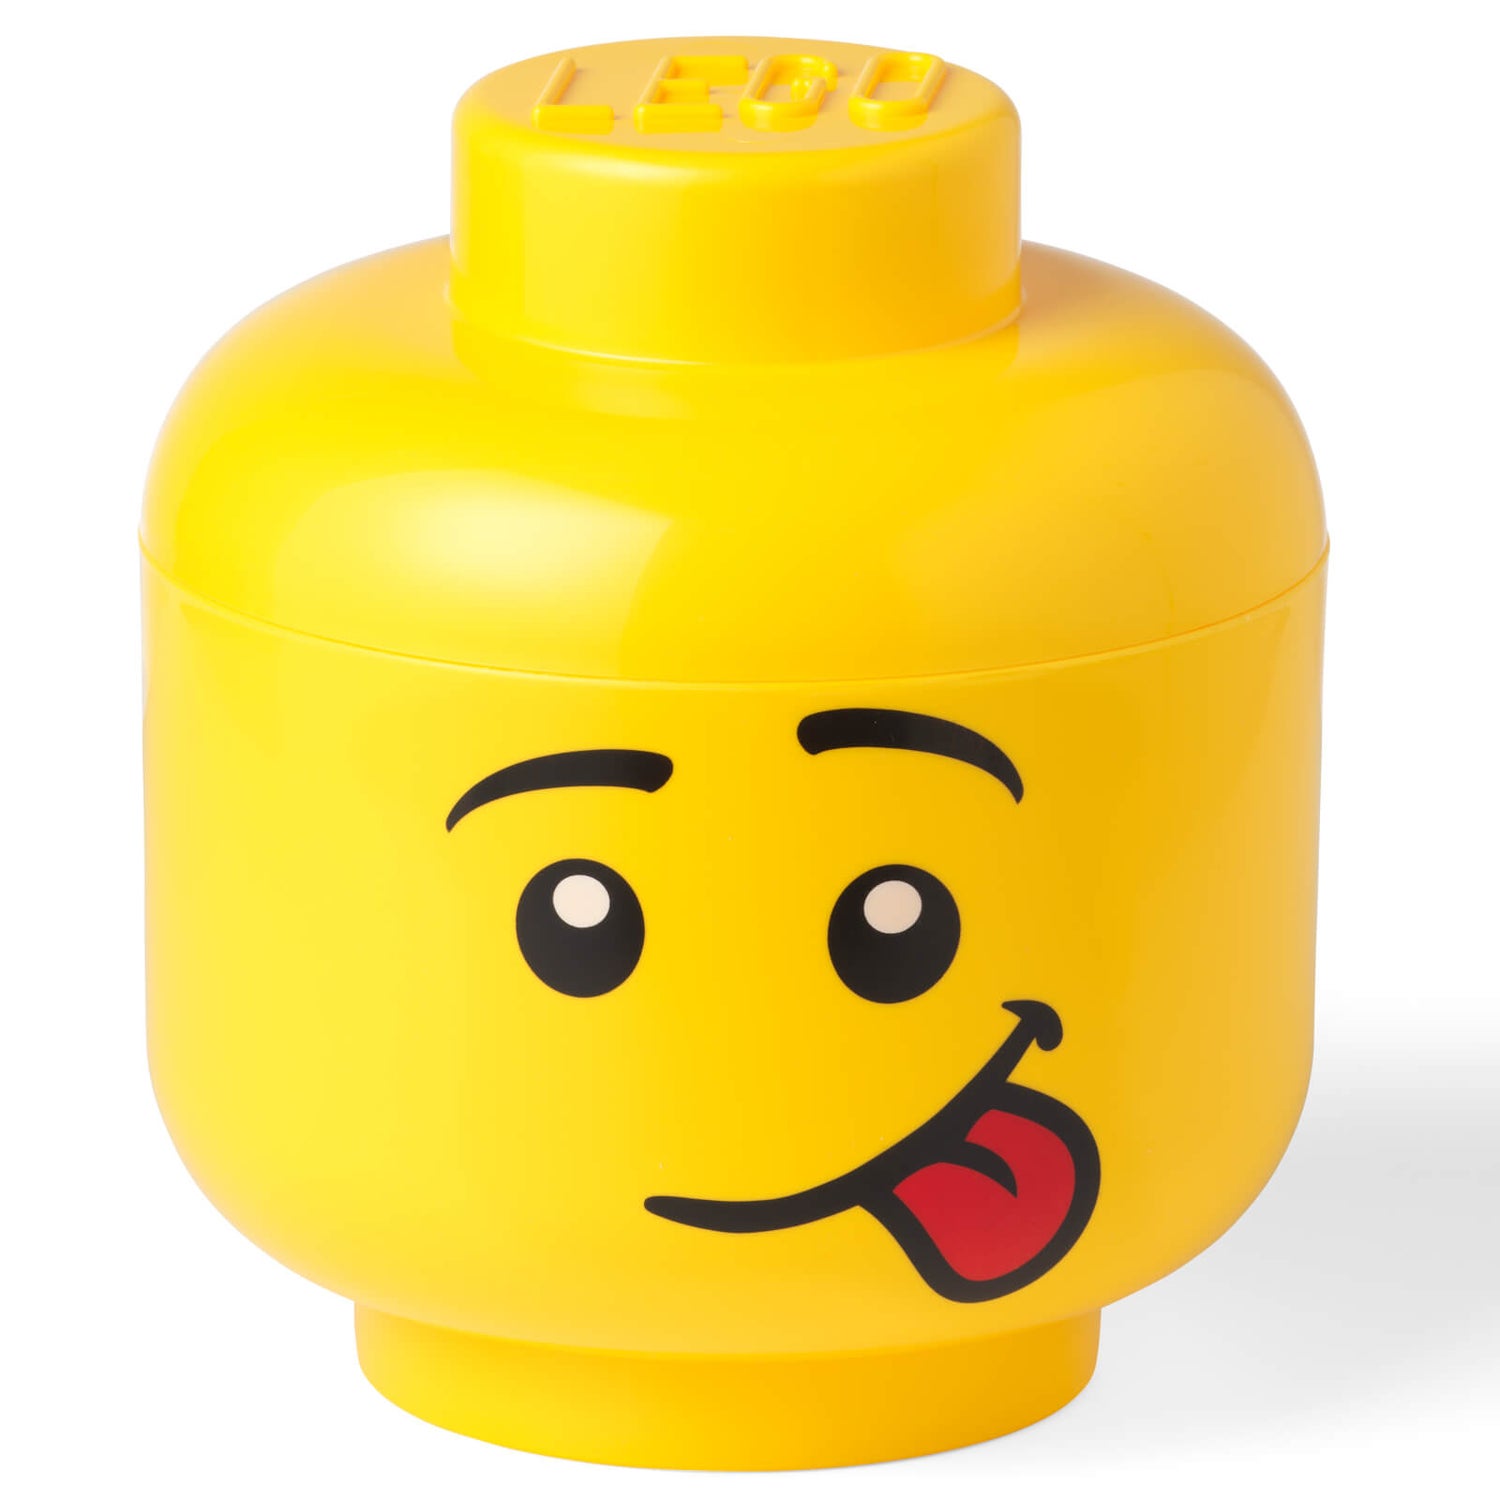 LEGO Storage Head Silly Small